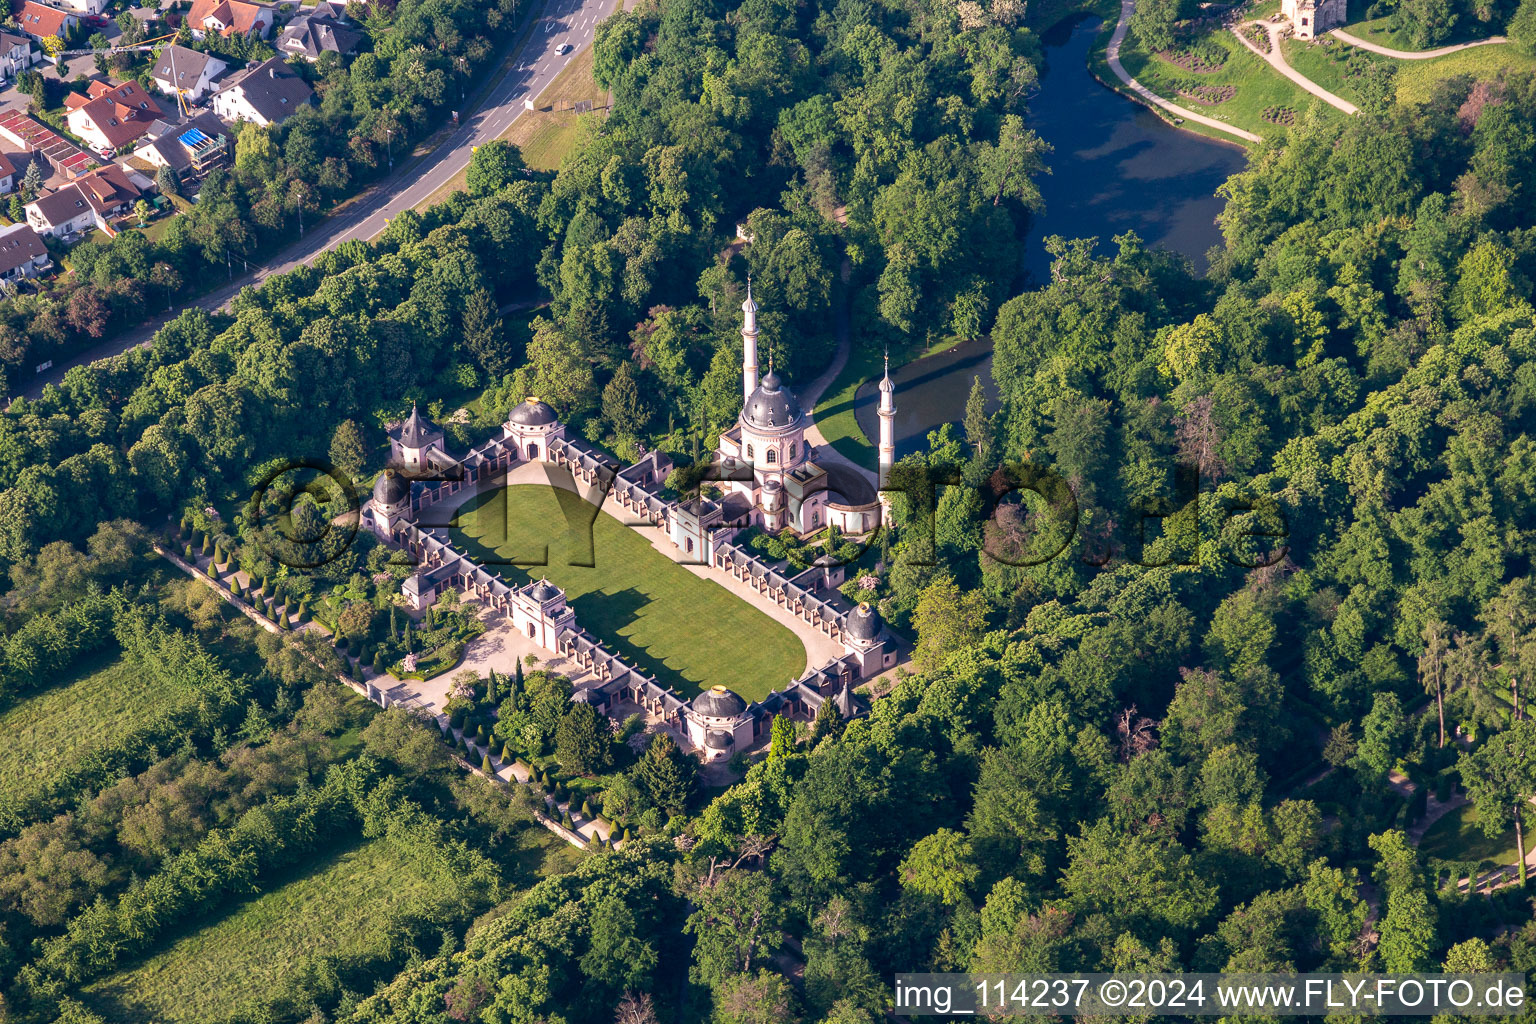 Vue aérienne de Mosquée dans le jardin du château de Schwetzingen à Schwetzingen dans le département Bade-Wurtemberg, Allemagne